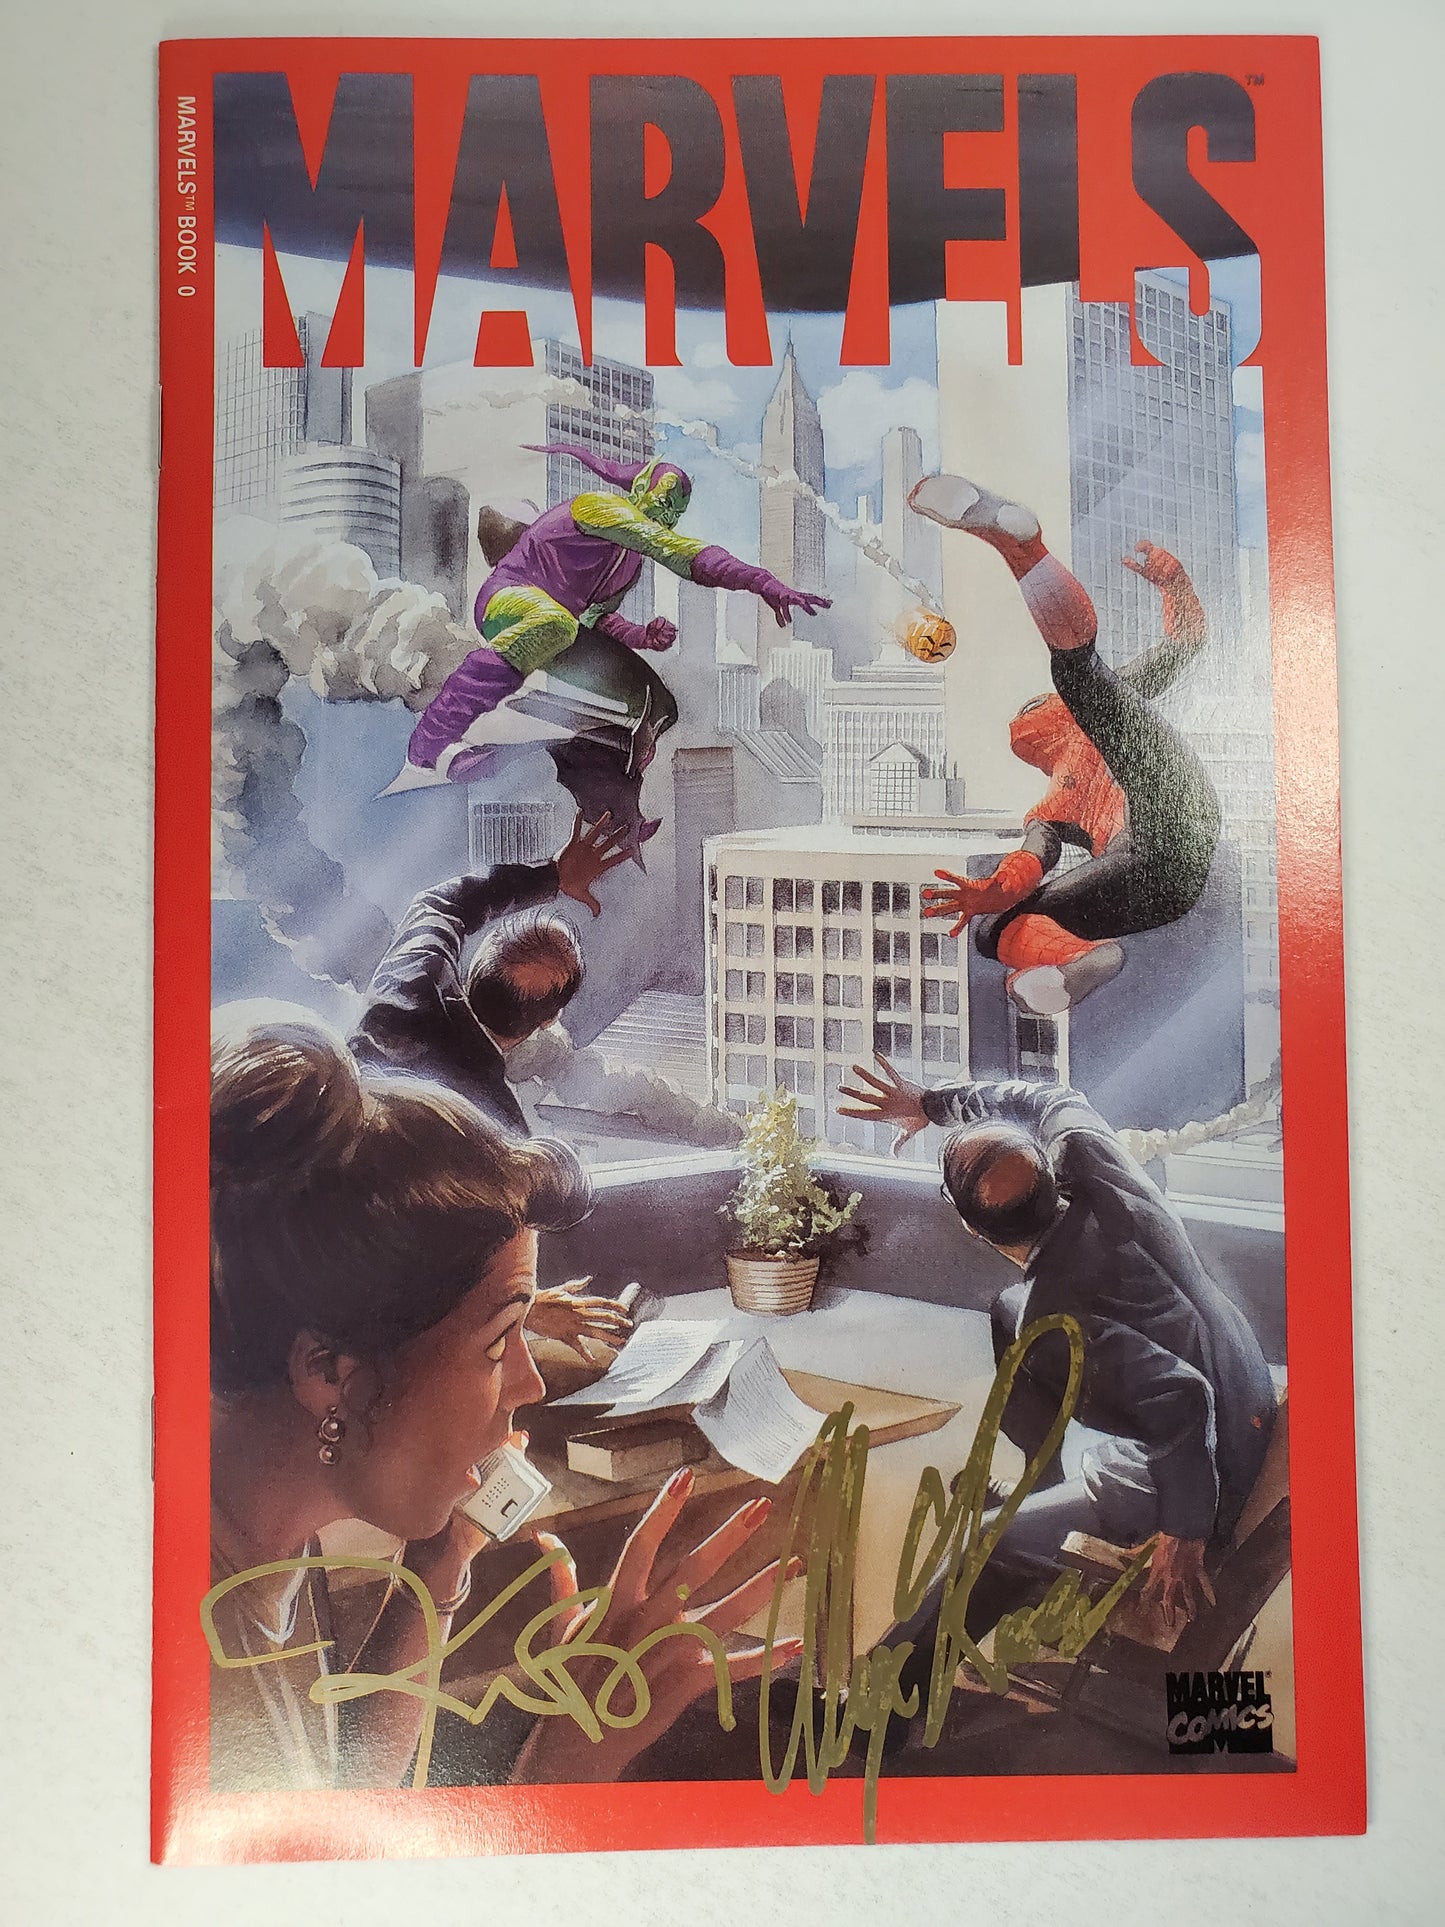 Marvels Vol 1 #0 Limited Series DE SIGNED